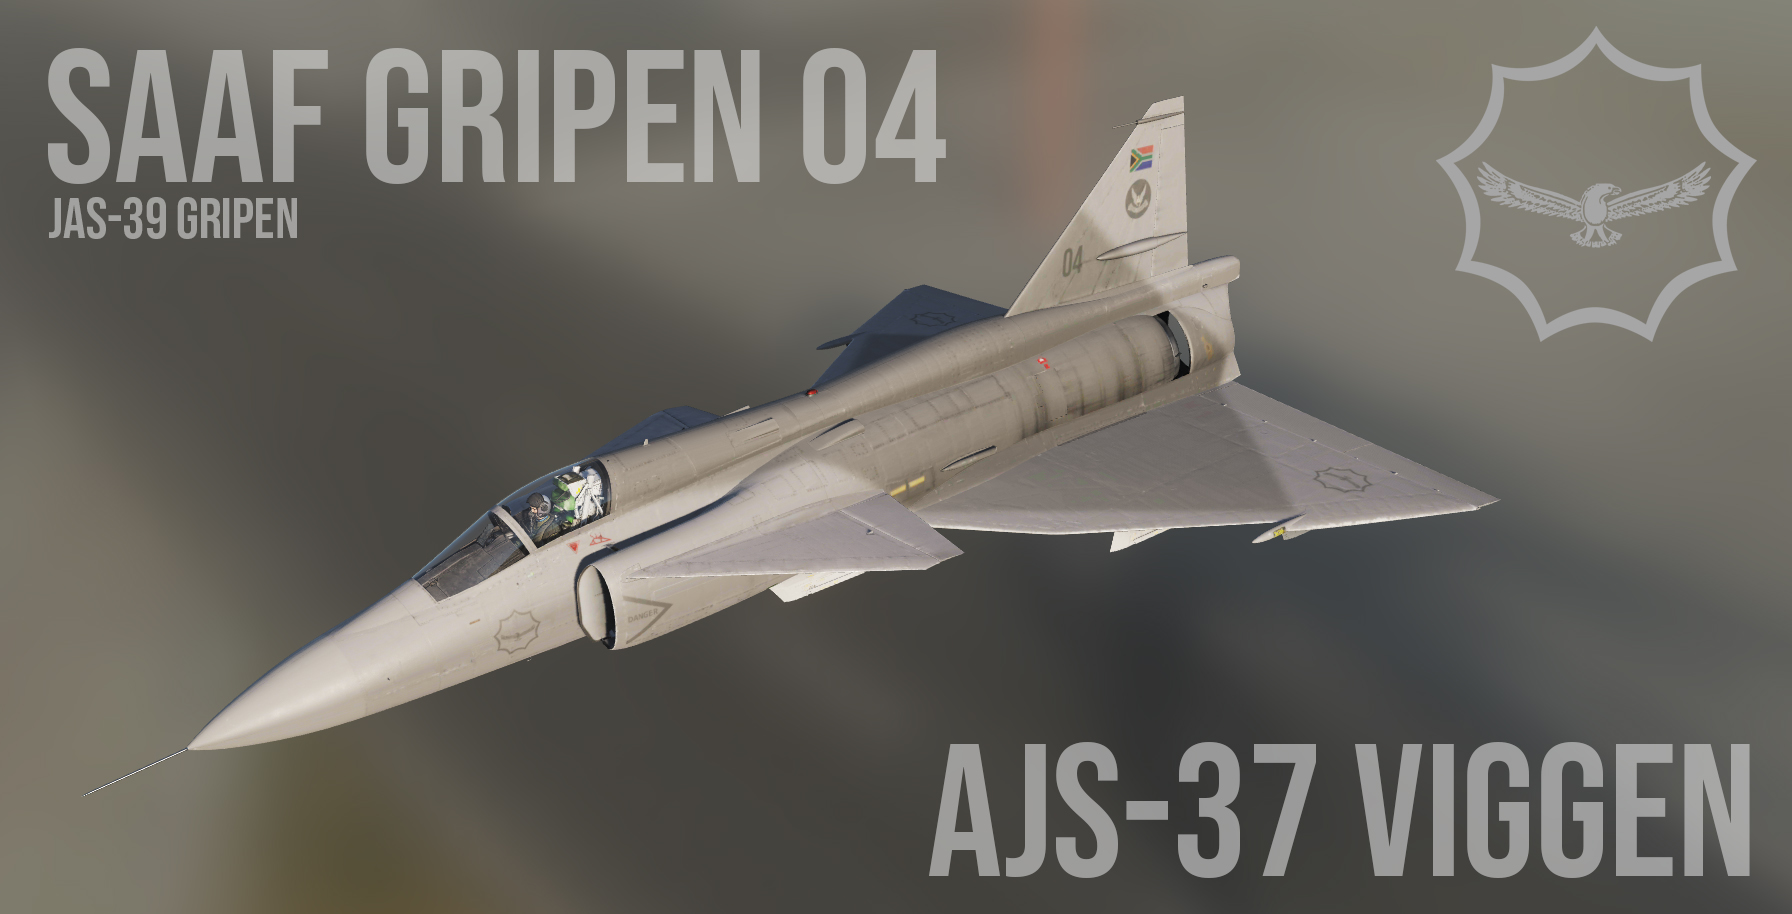 SAAF Gripen for the Viggen (v1.0)